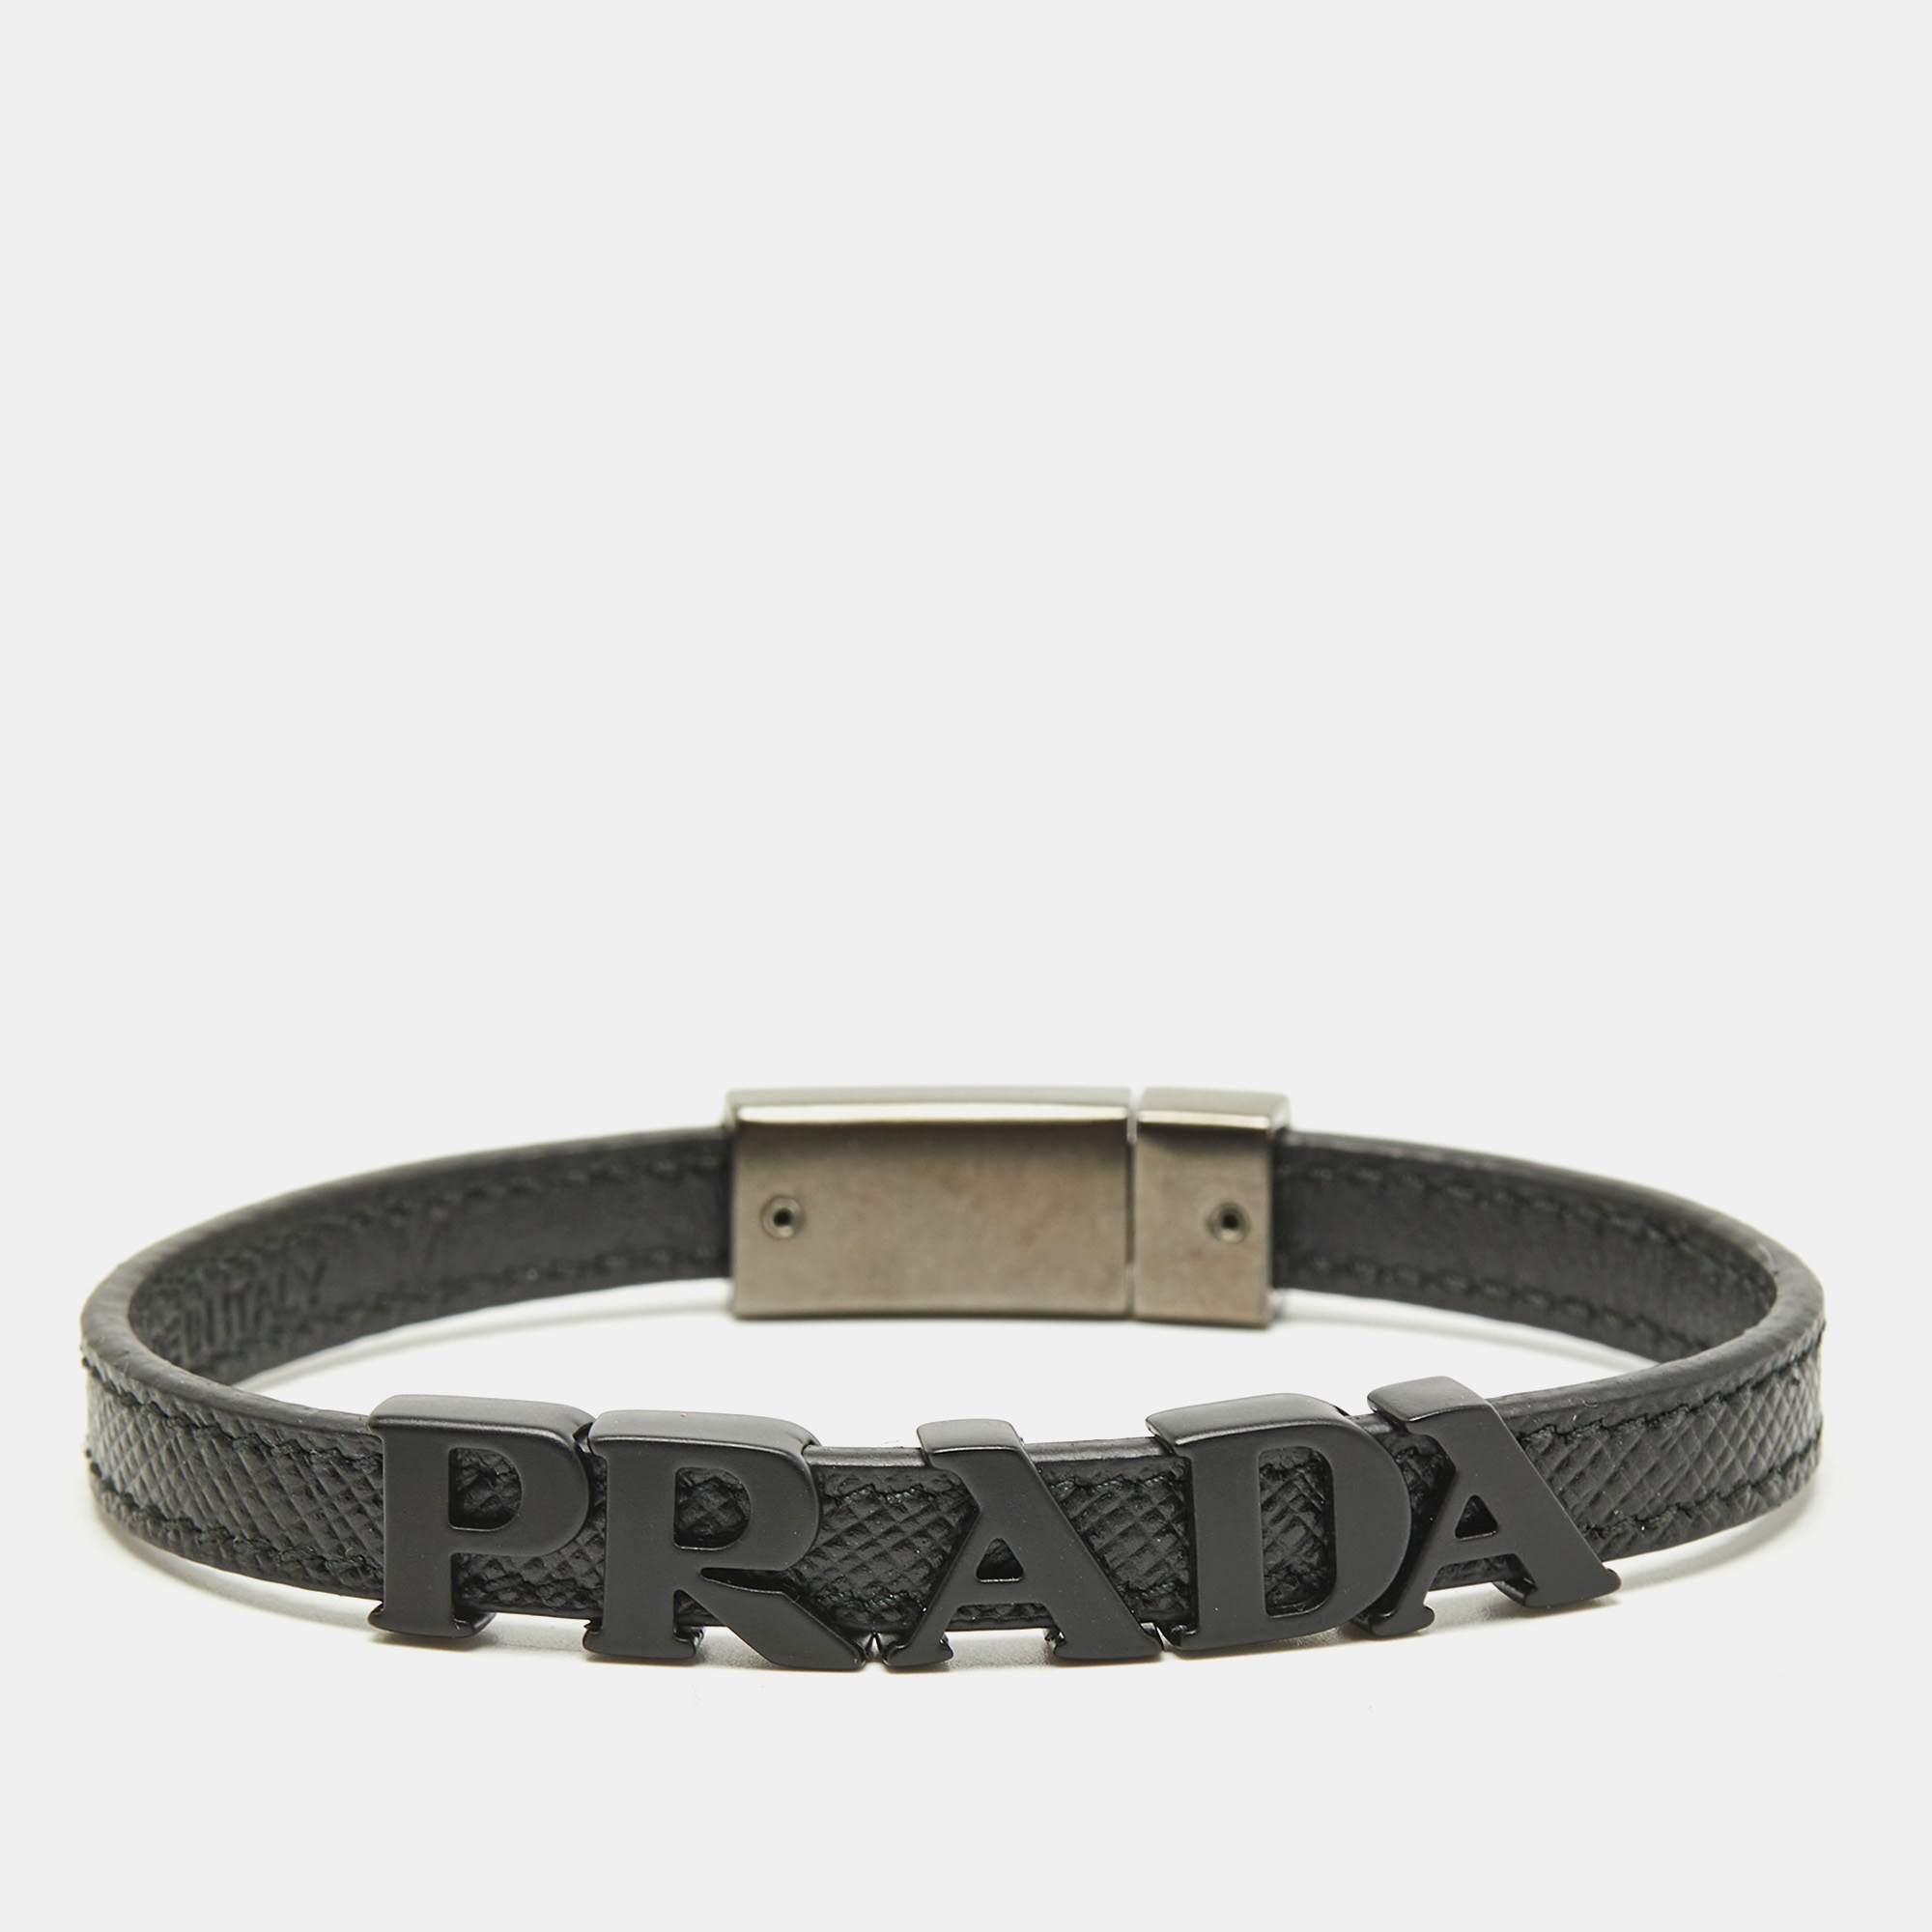 Prada logo black coated and gunmetal tone leather bracelet